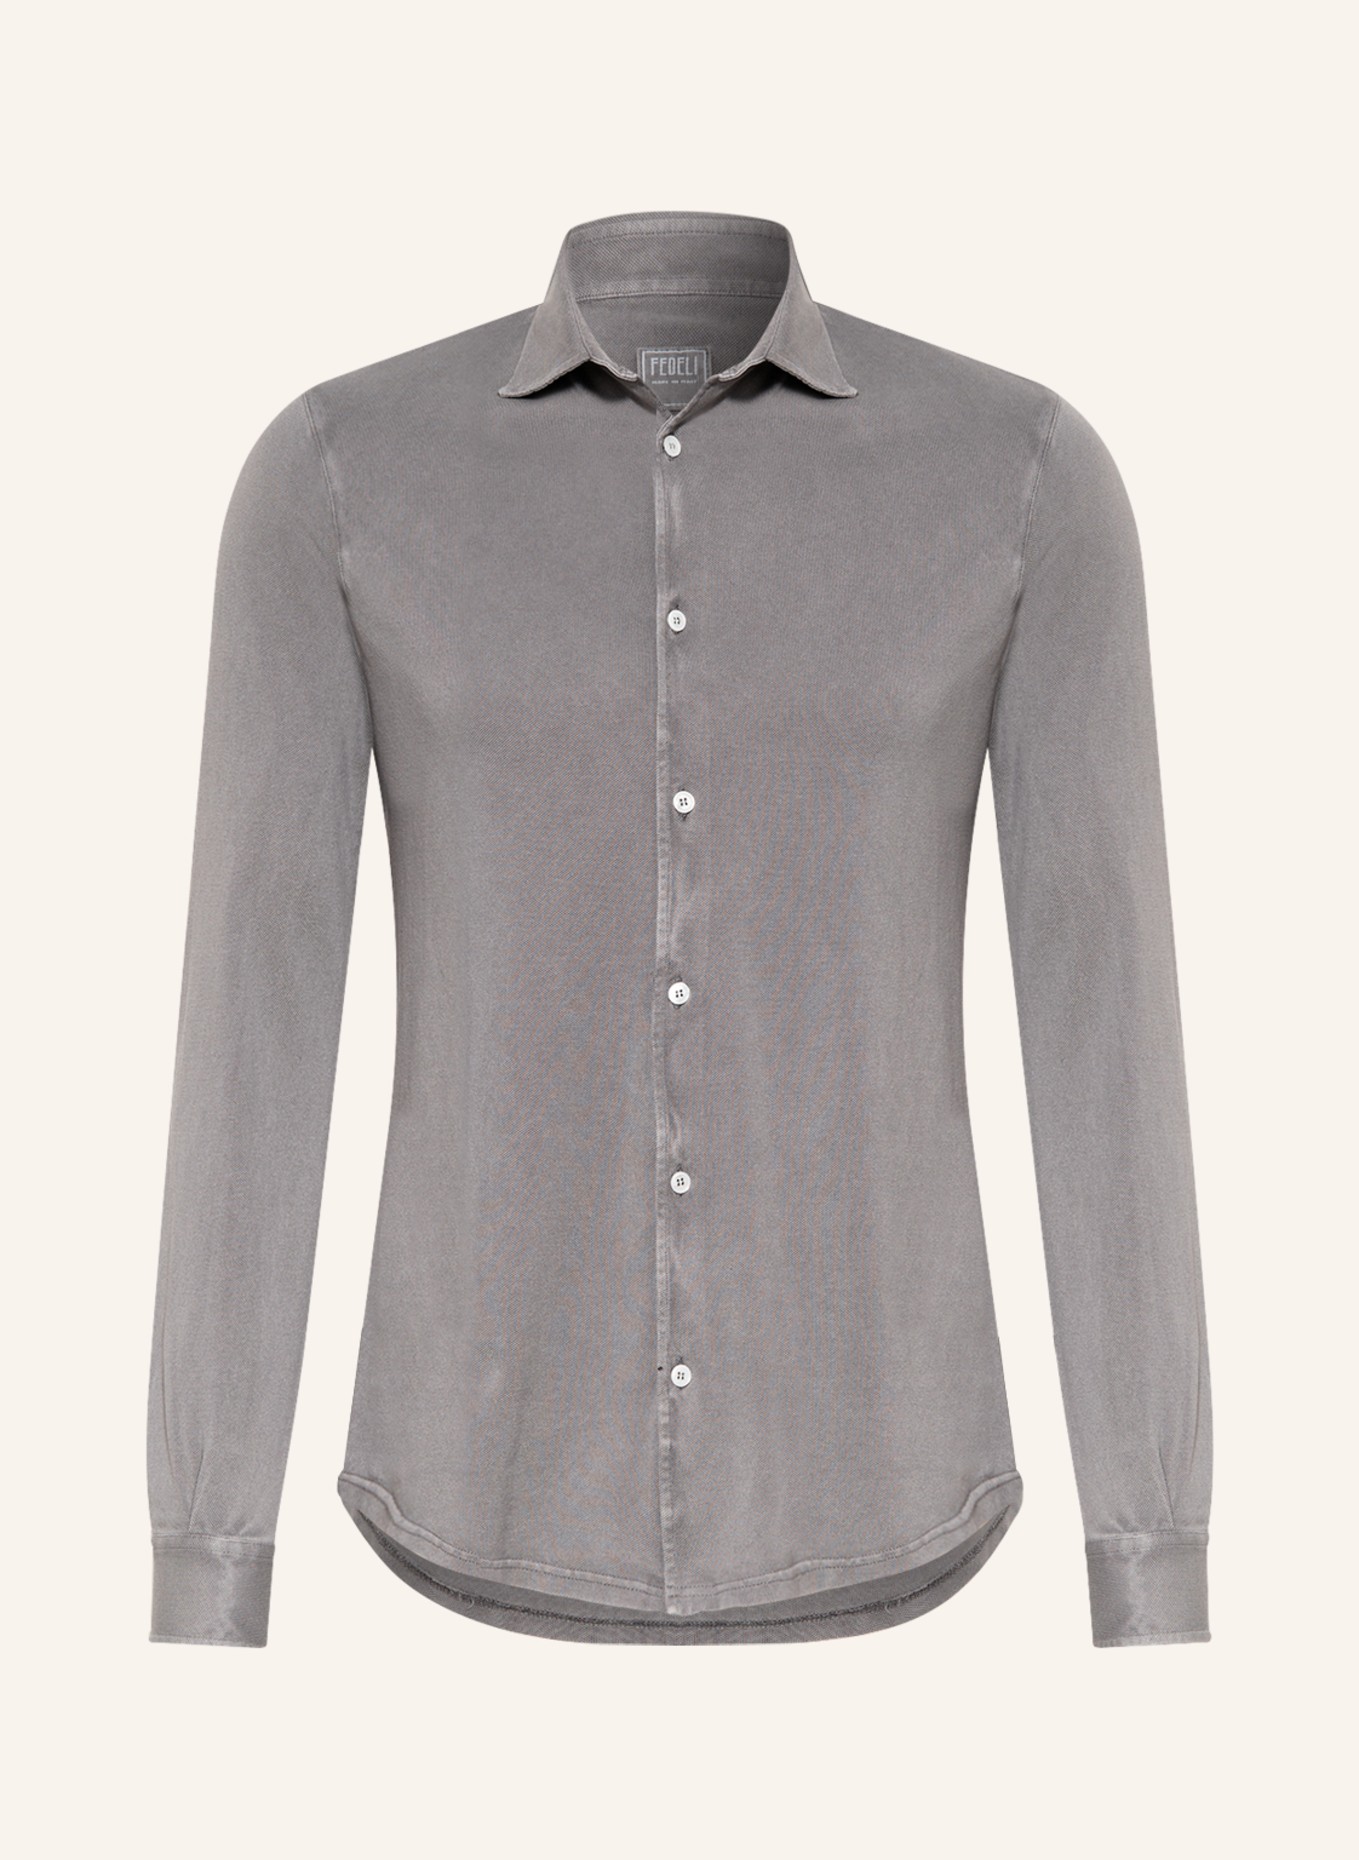 FEDELI Piqué shirt slim fit, Color: TAUPE (Image 1)